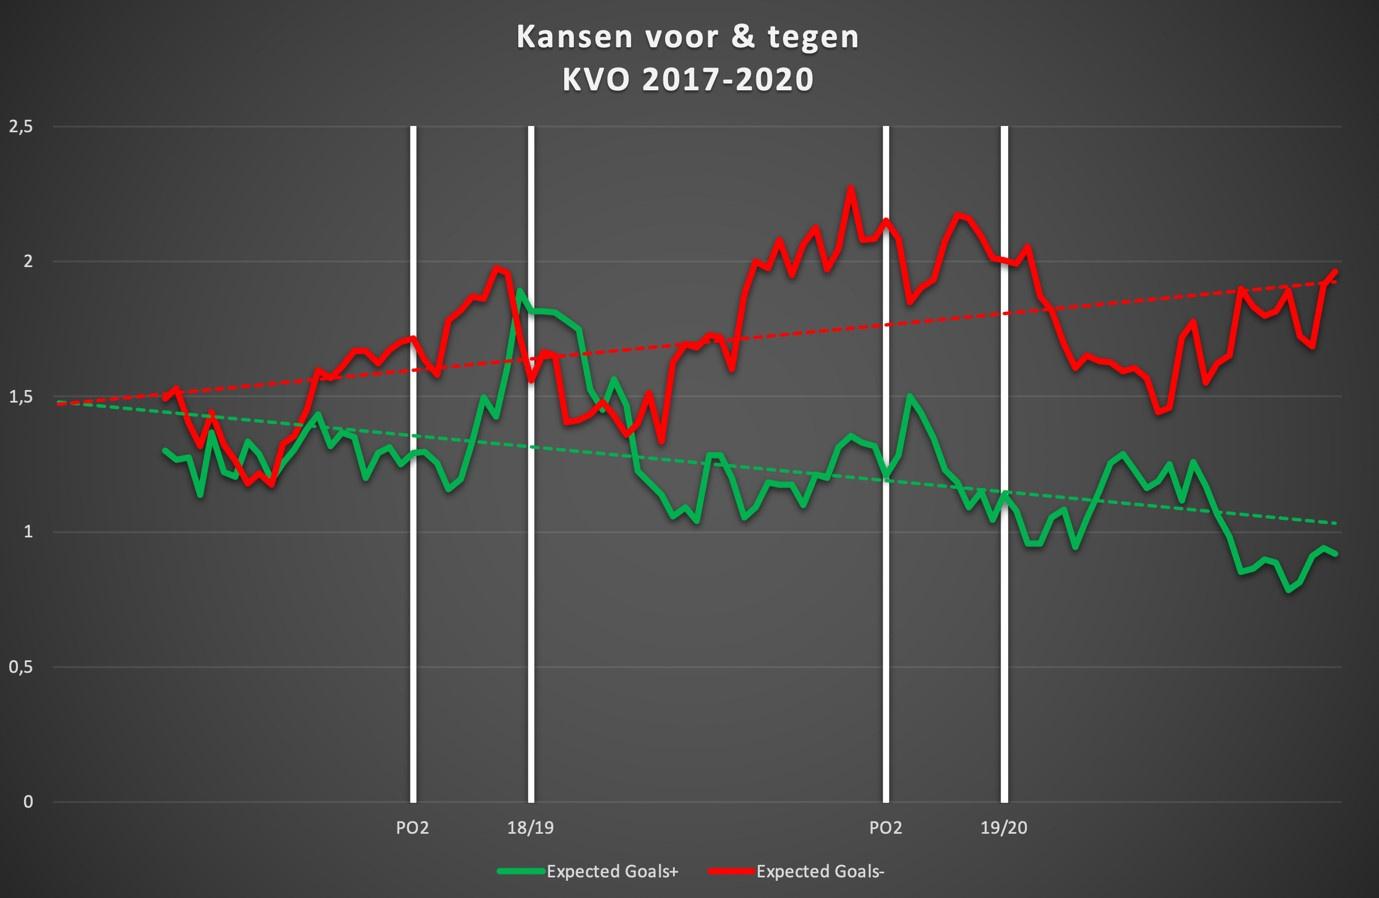 De evolutie van de kansen voor (groen) en tegen (rood) van KVO de afgelopen drie seizoenen.